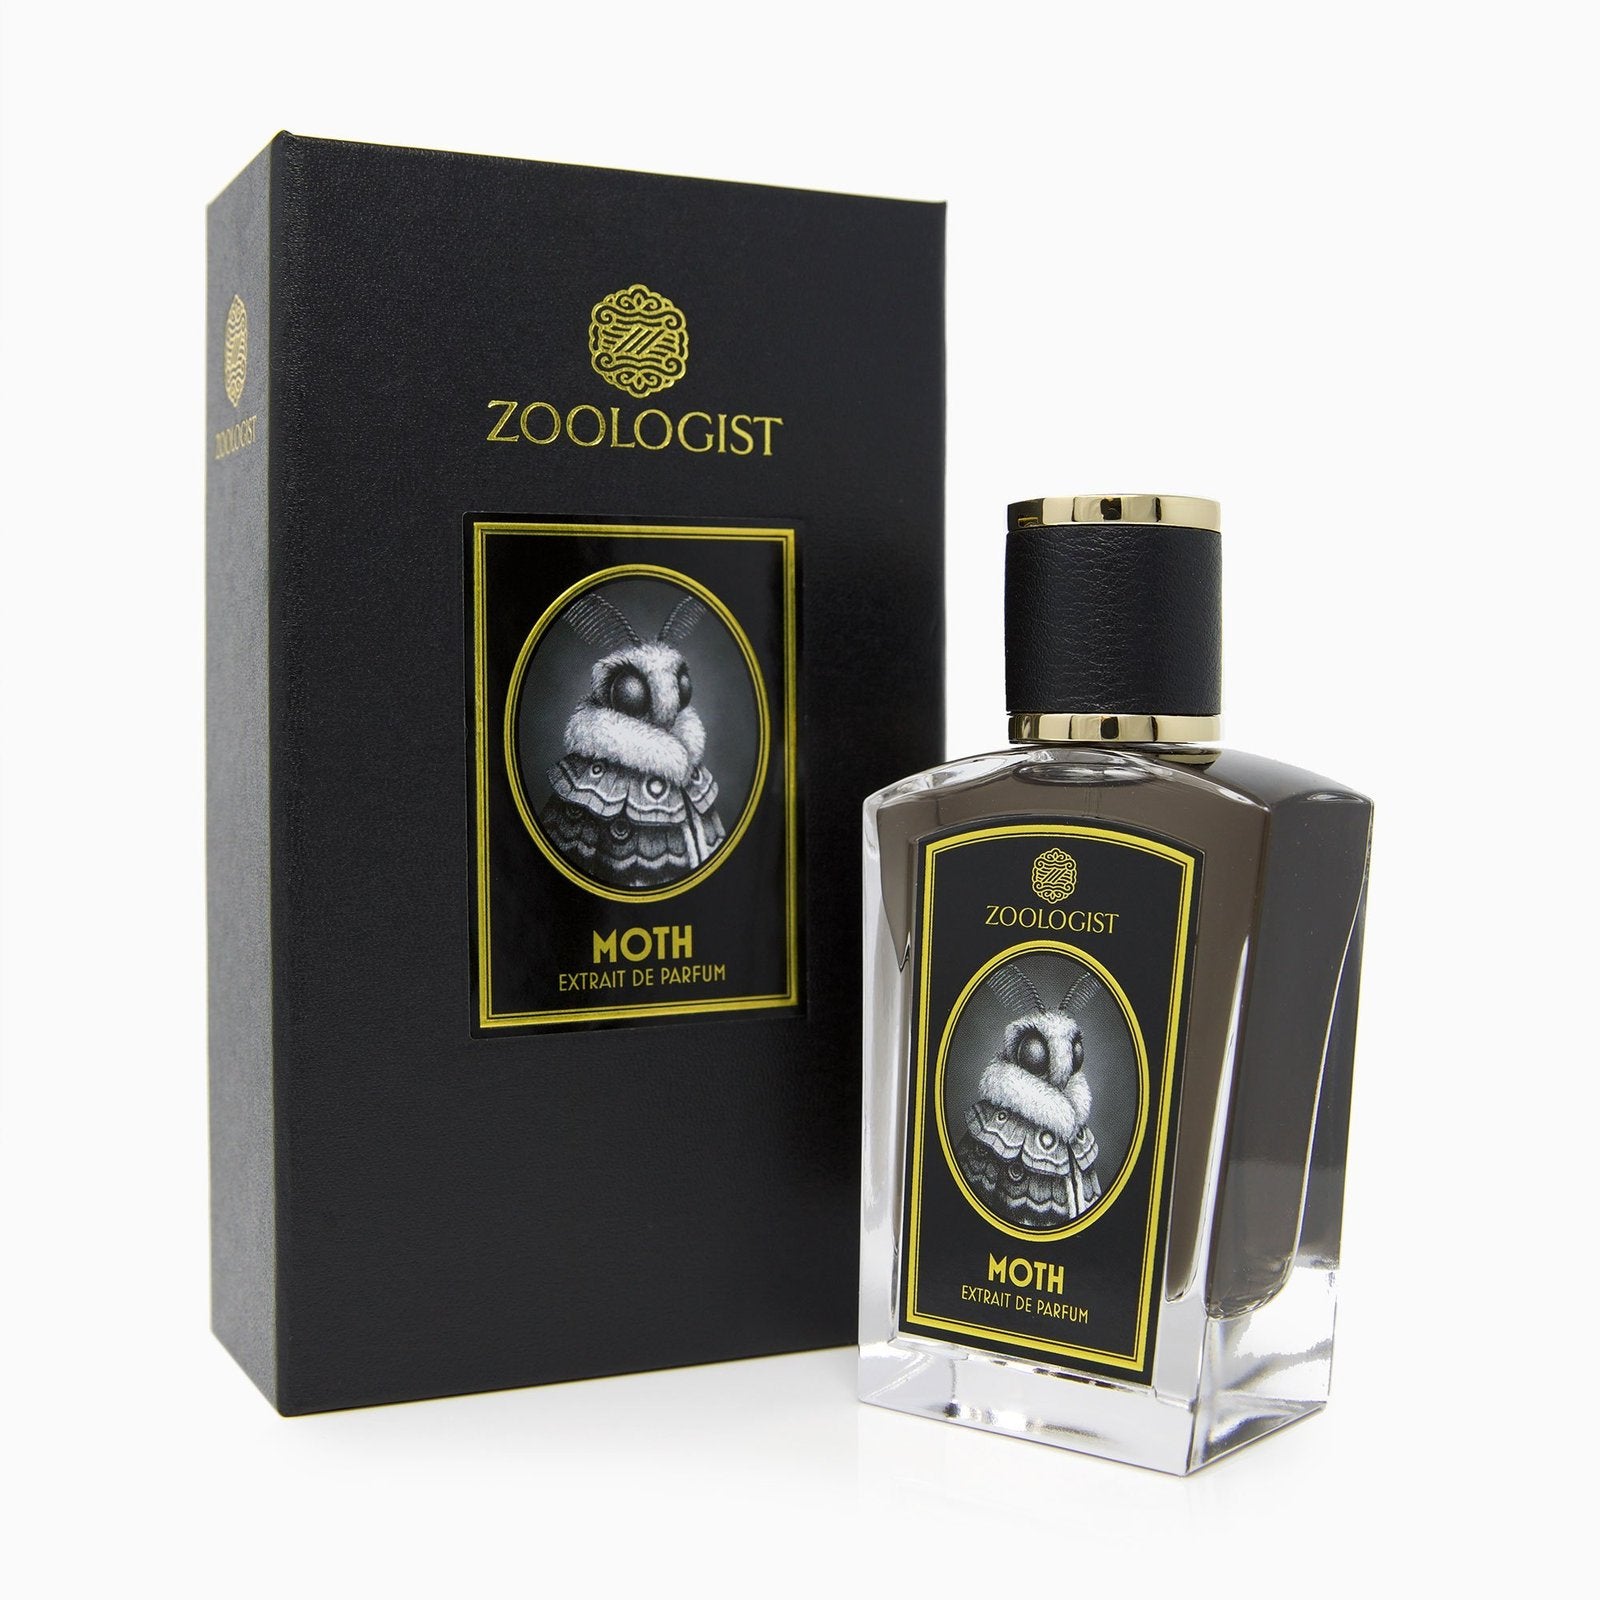 Zoologist – Moth Extrait De Parfum 60ml